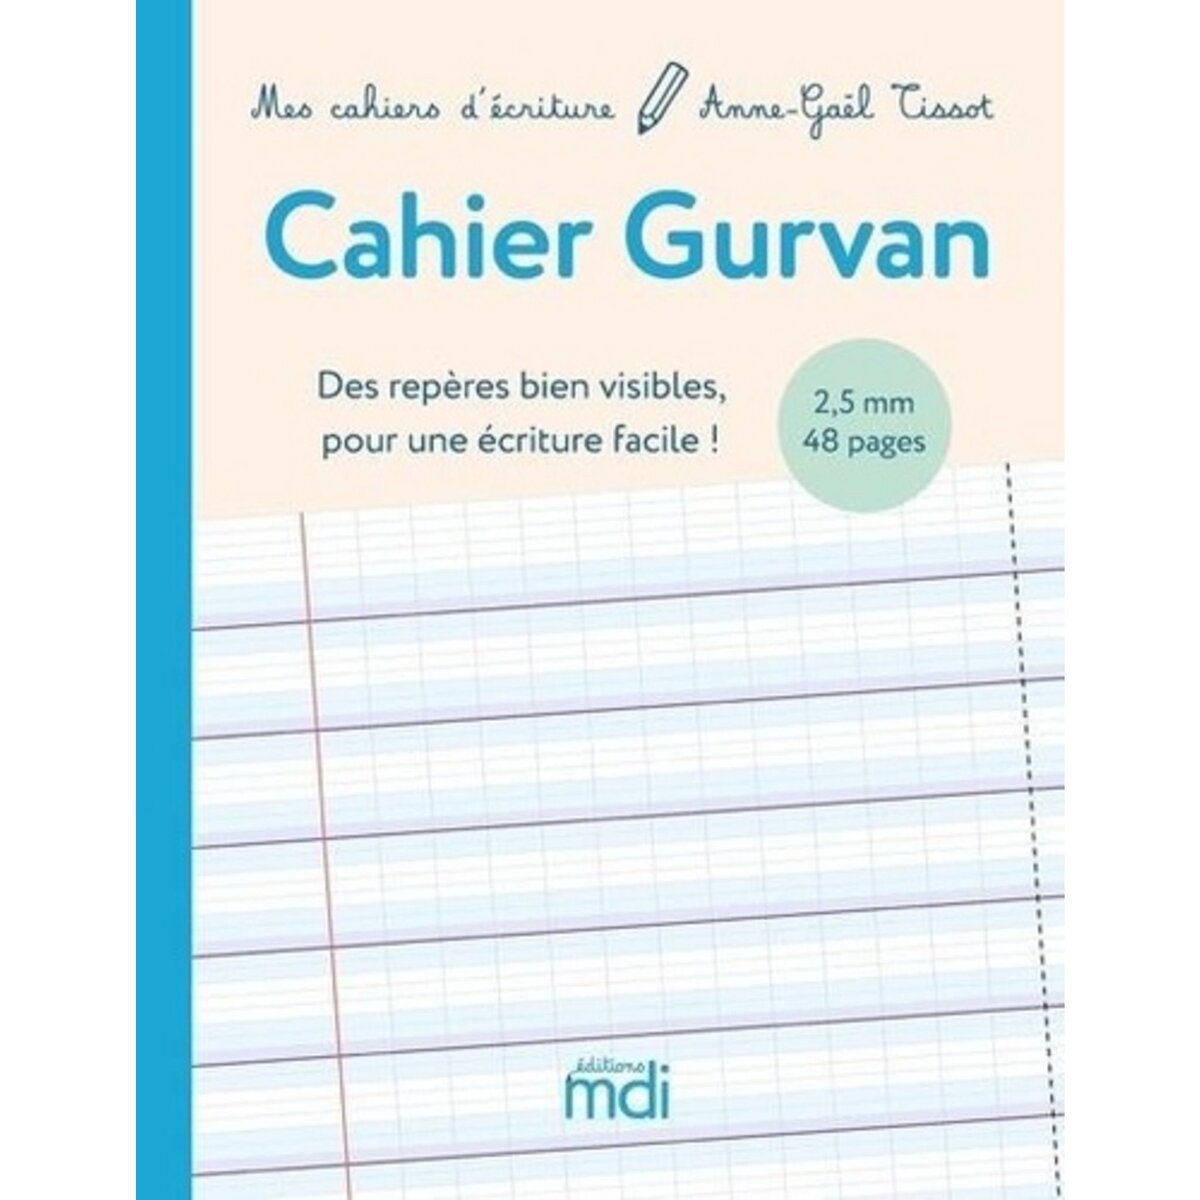 CAHIER GURVAN 2,5MM. DES REPERES BIEN VISIBLES POUR UNE ECRITURE FACILE !,  Tissot Anne-Gaël pas cher 